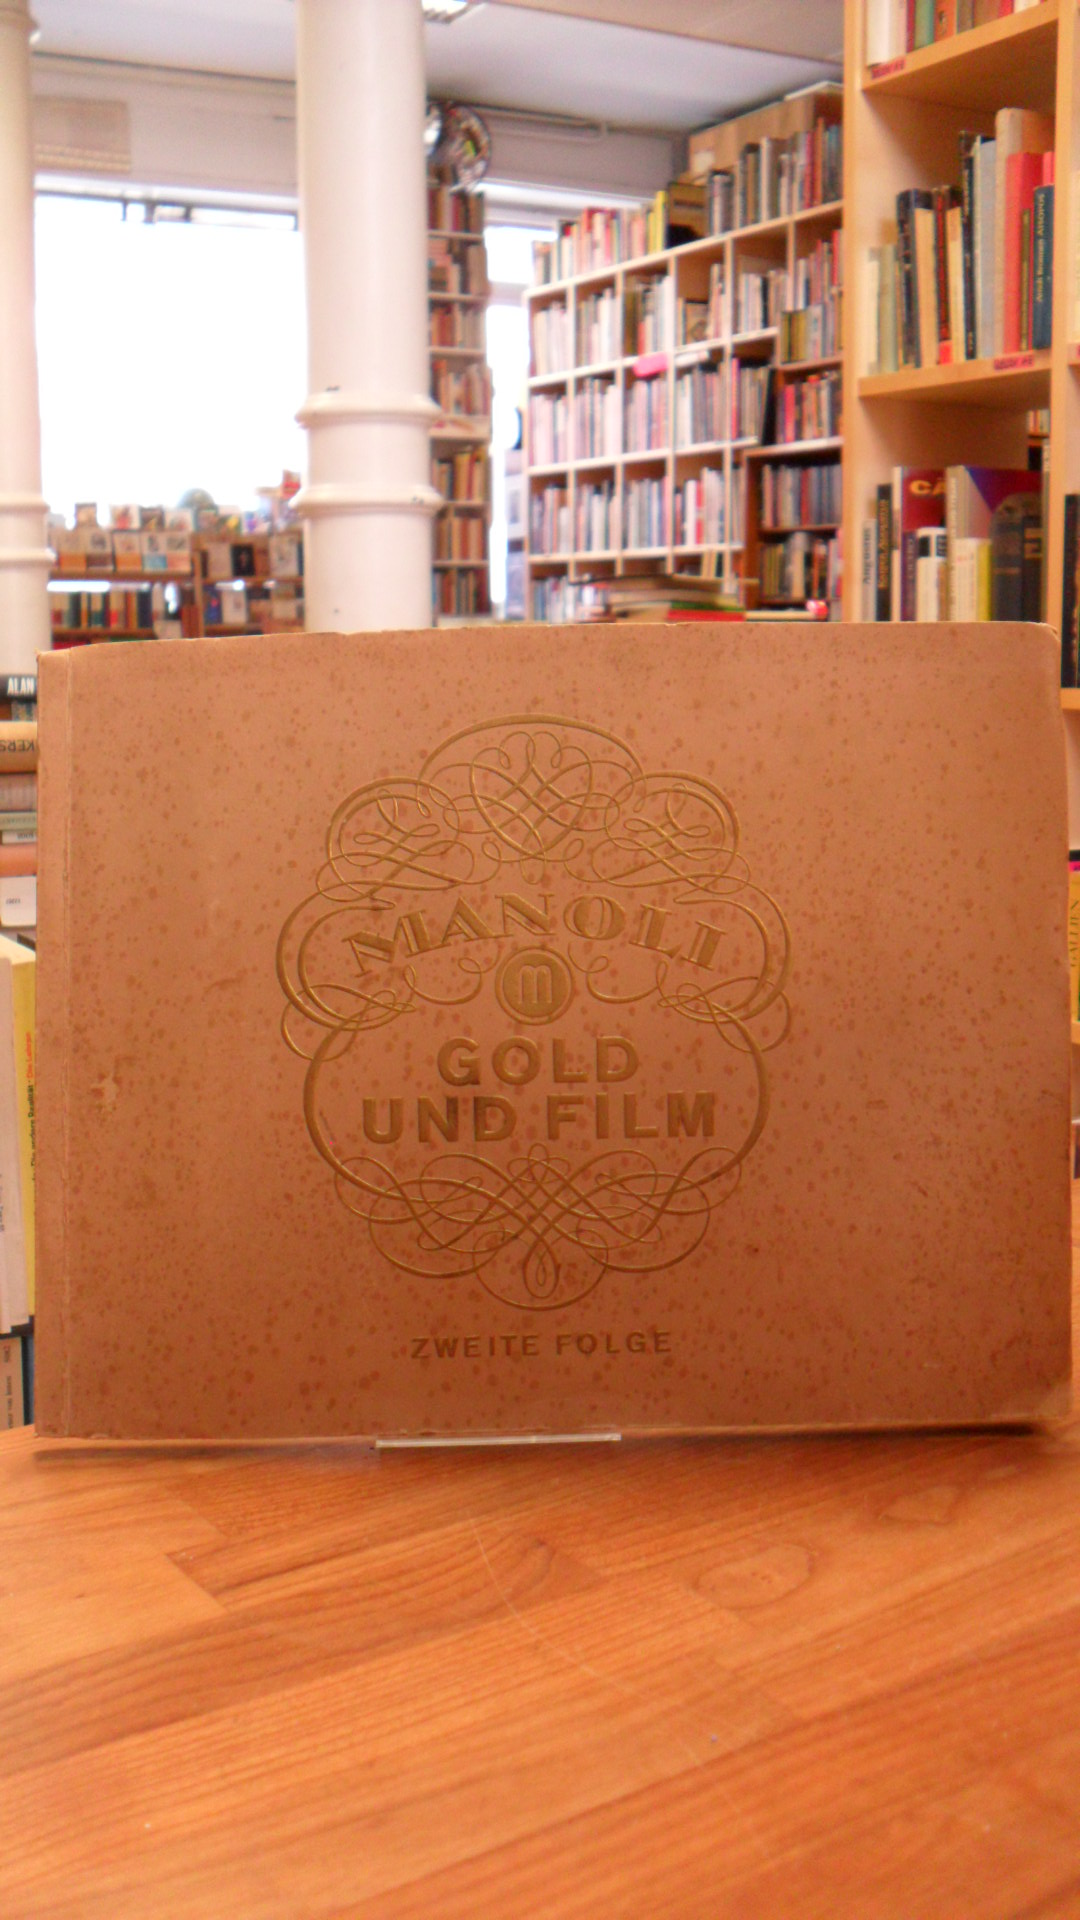 Sammelbilderalbum – Manoli, Gold und Film – Zweite Folge – Bild 505 – 672 [Samme